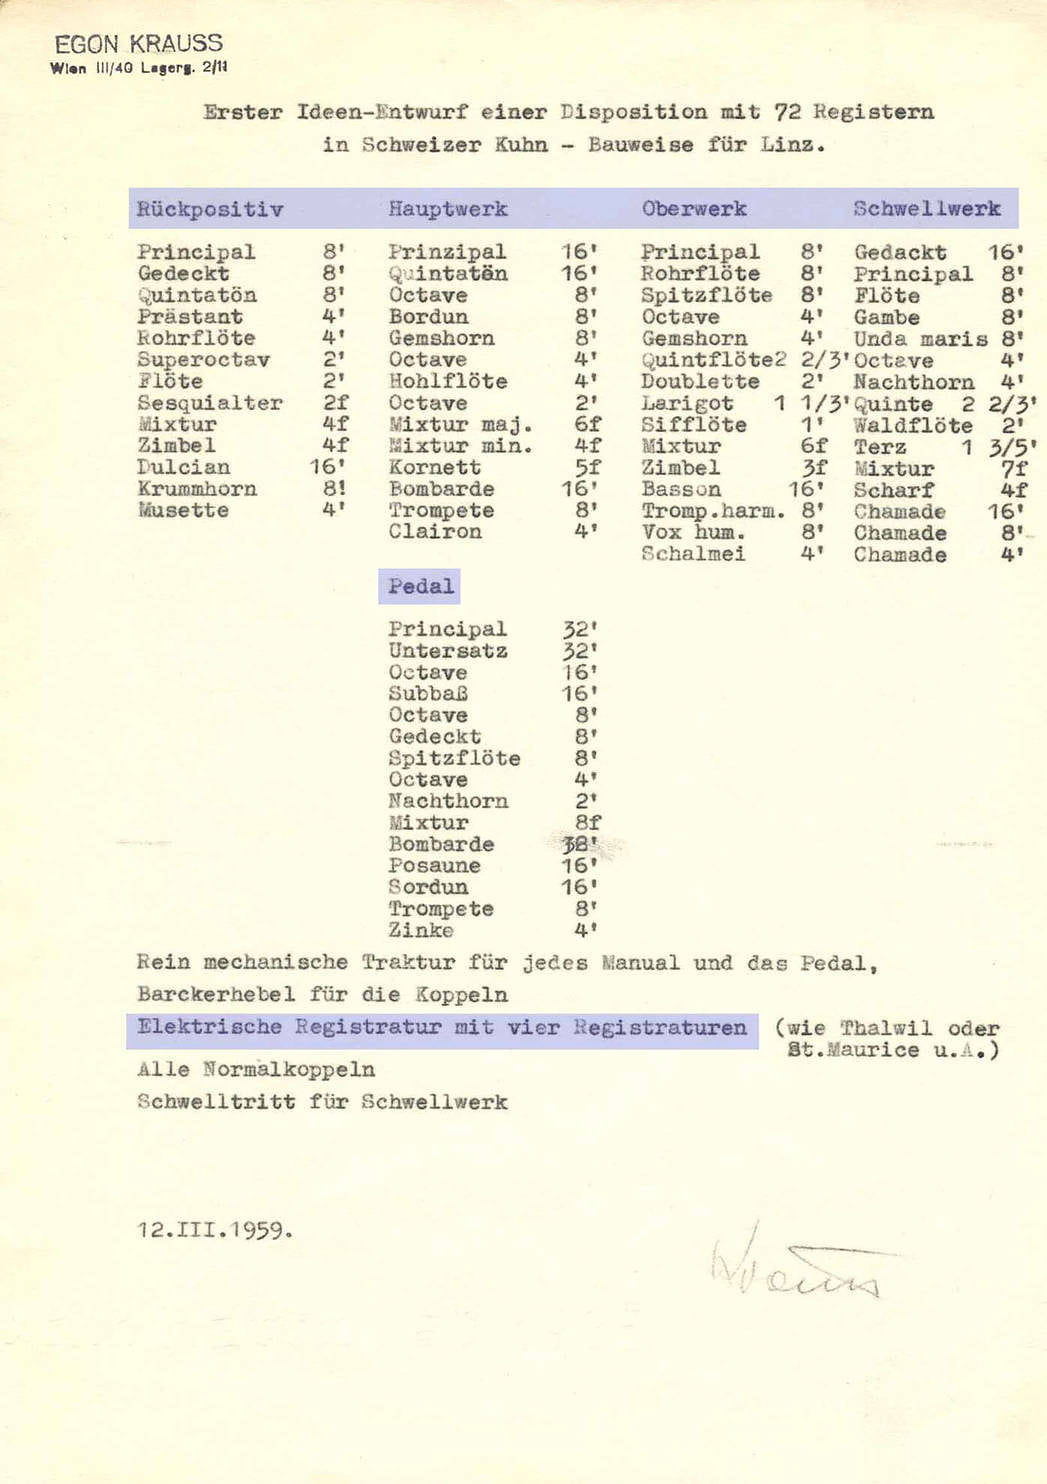 „Erster Ideen-Entwurf einer Disposition mit 72 Registern in Schweizer Kuhn-Bauweise für Linz“ von Egon Krauss (12. März 1959).